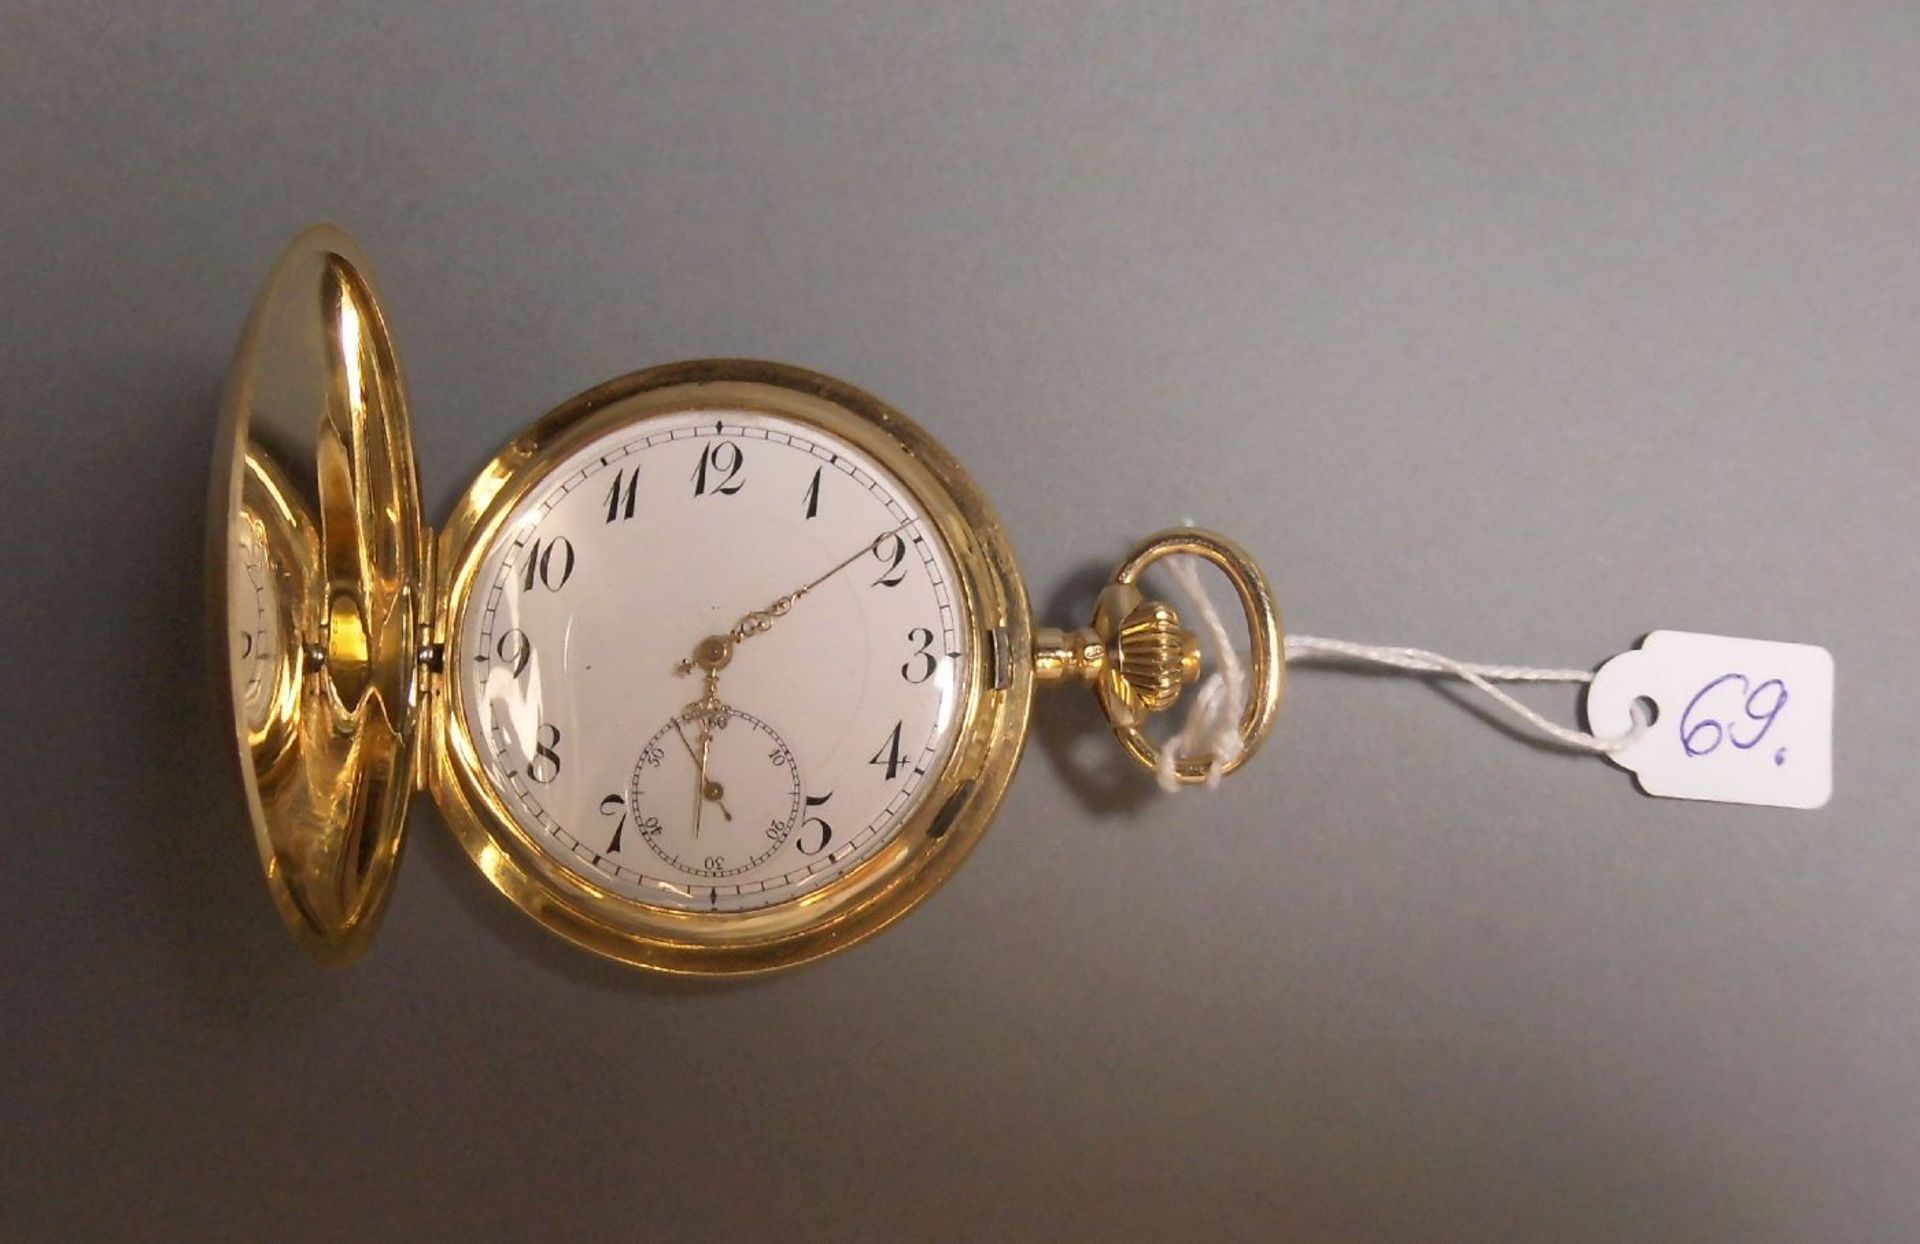 TASCHENUHR / pocketwatch, 14 kt. Gold, Staubdeckel Metall. Weißes Zifferblatt, kleine Sekunde bei